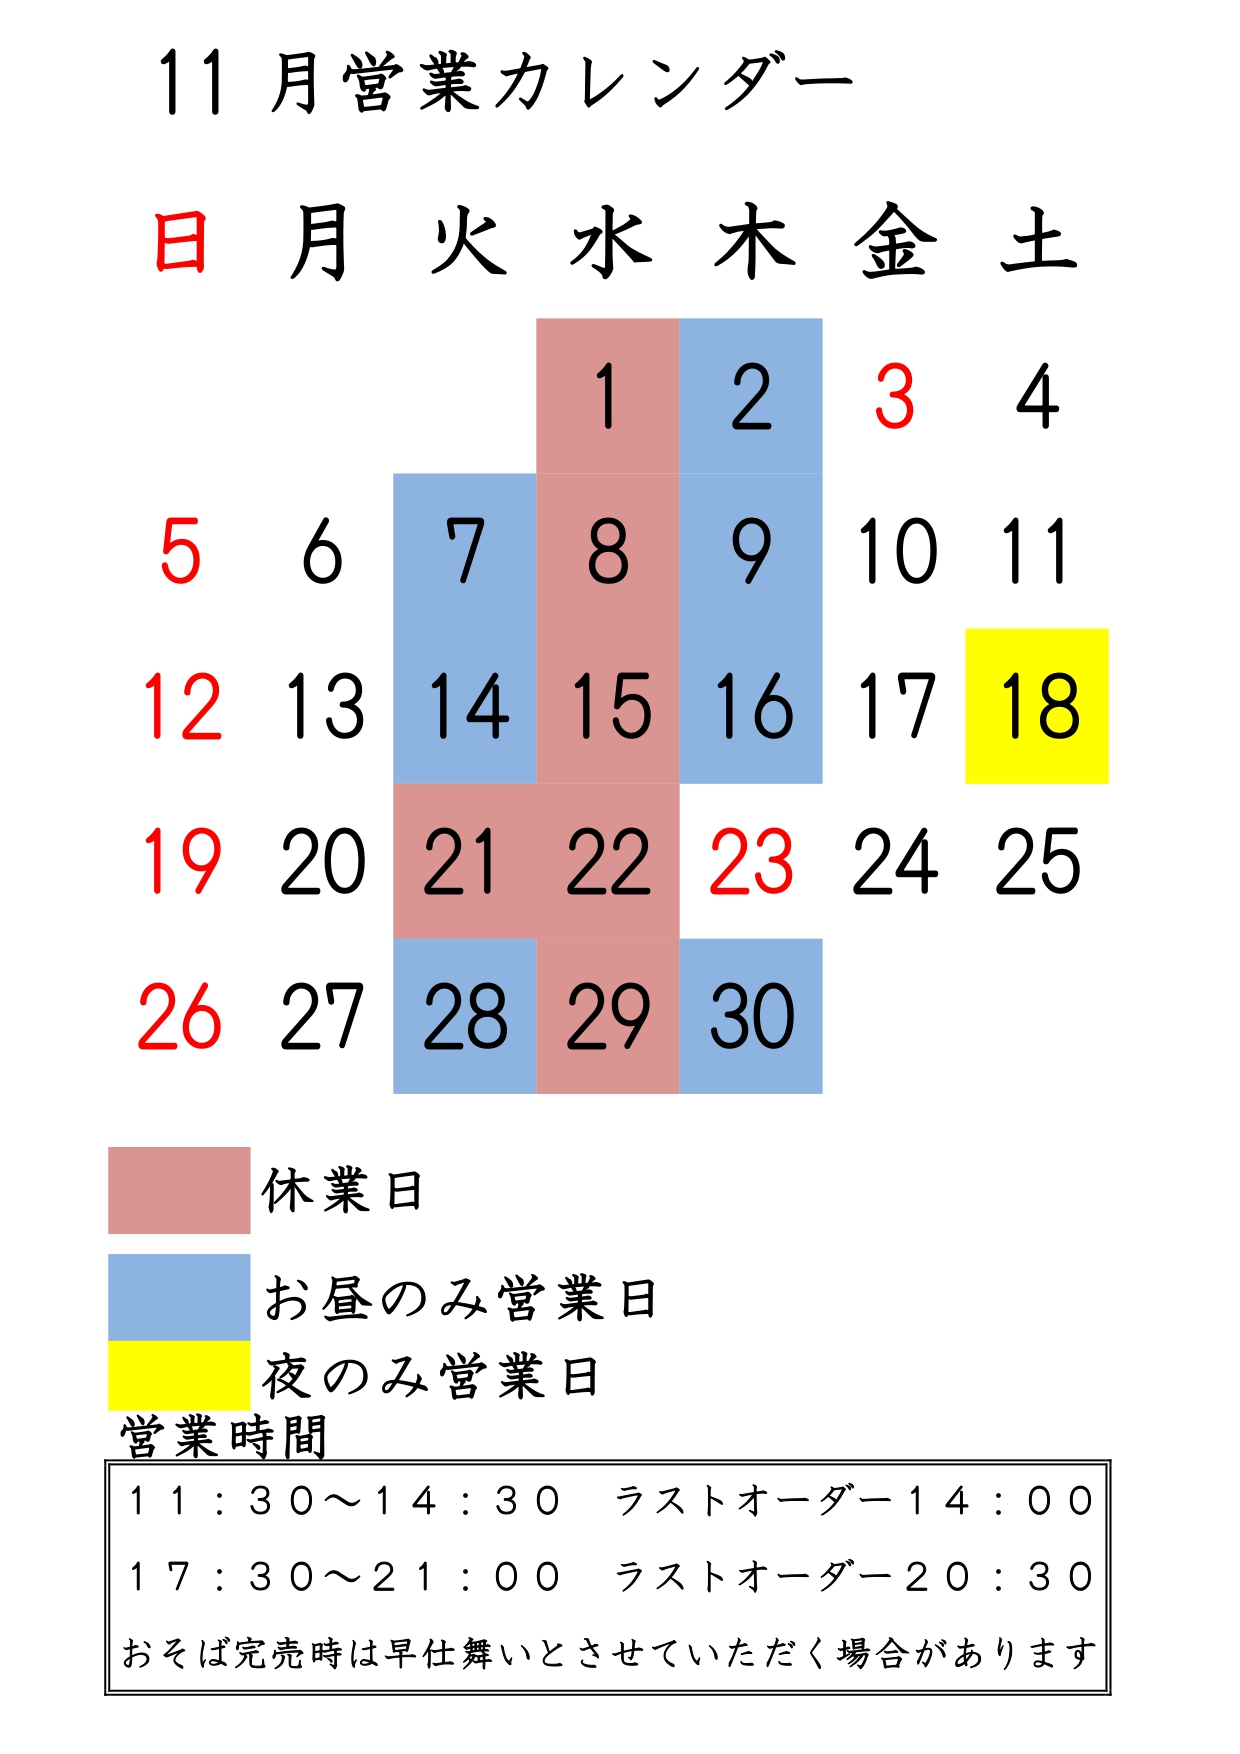 11/18お昼のみ臨時休業のお知らせ